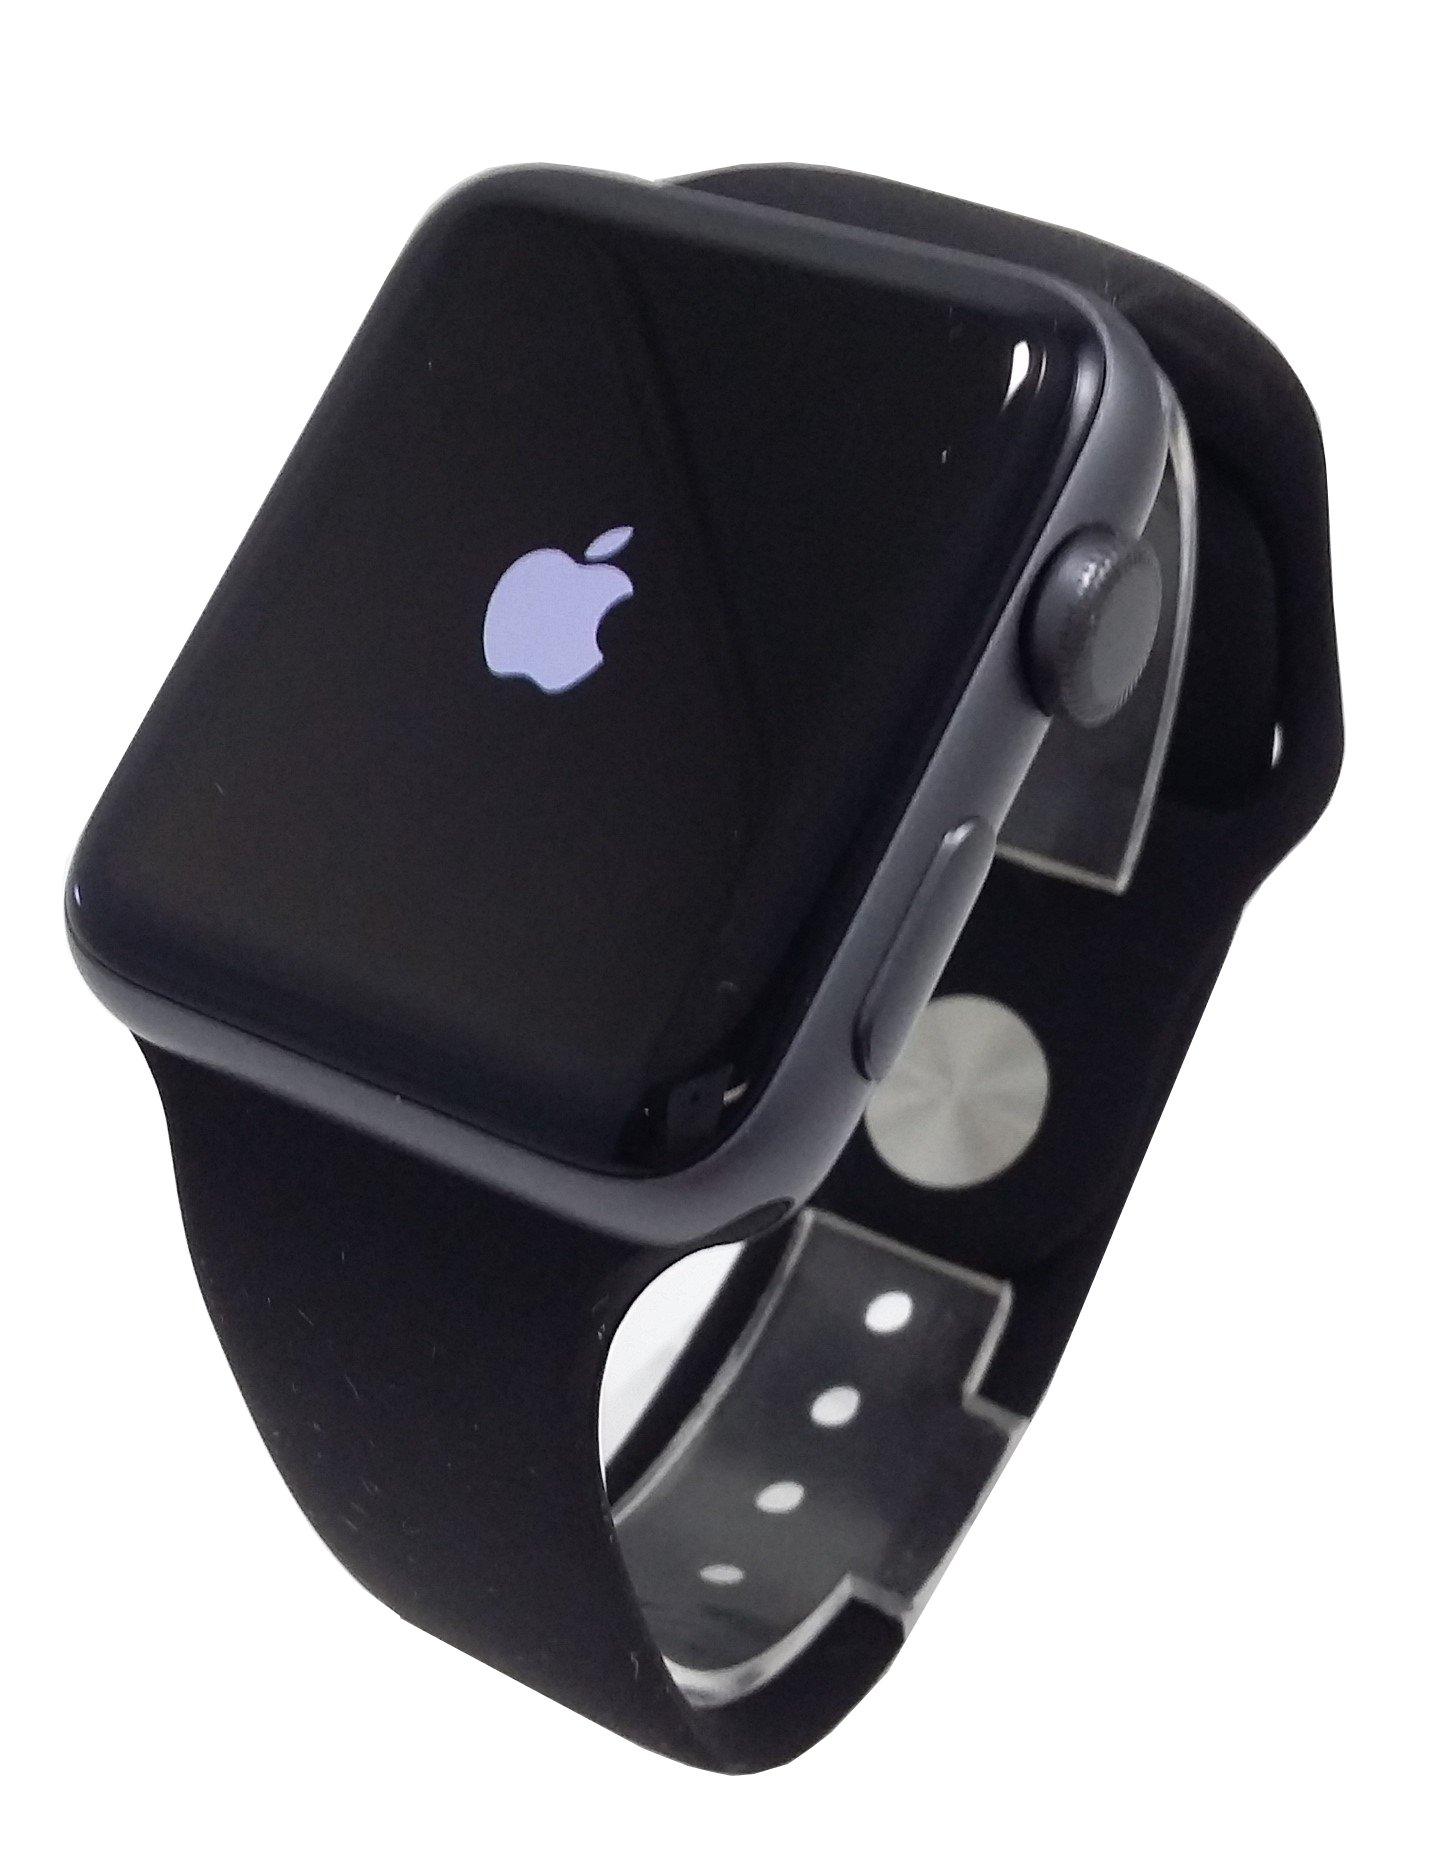 Trade In Apple Watch Series 2 42mm Aluminum Gamestop